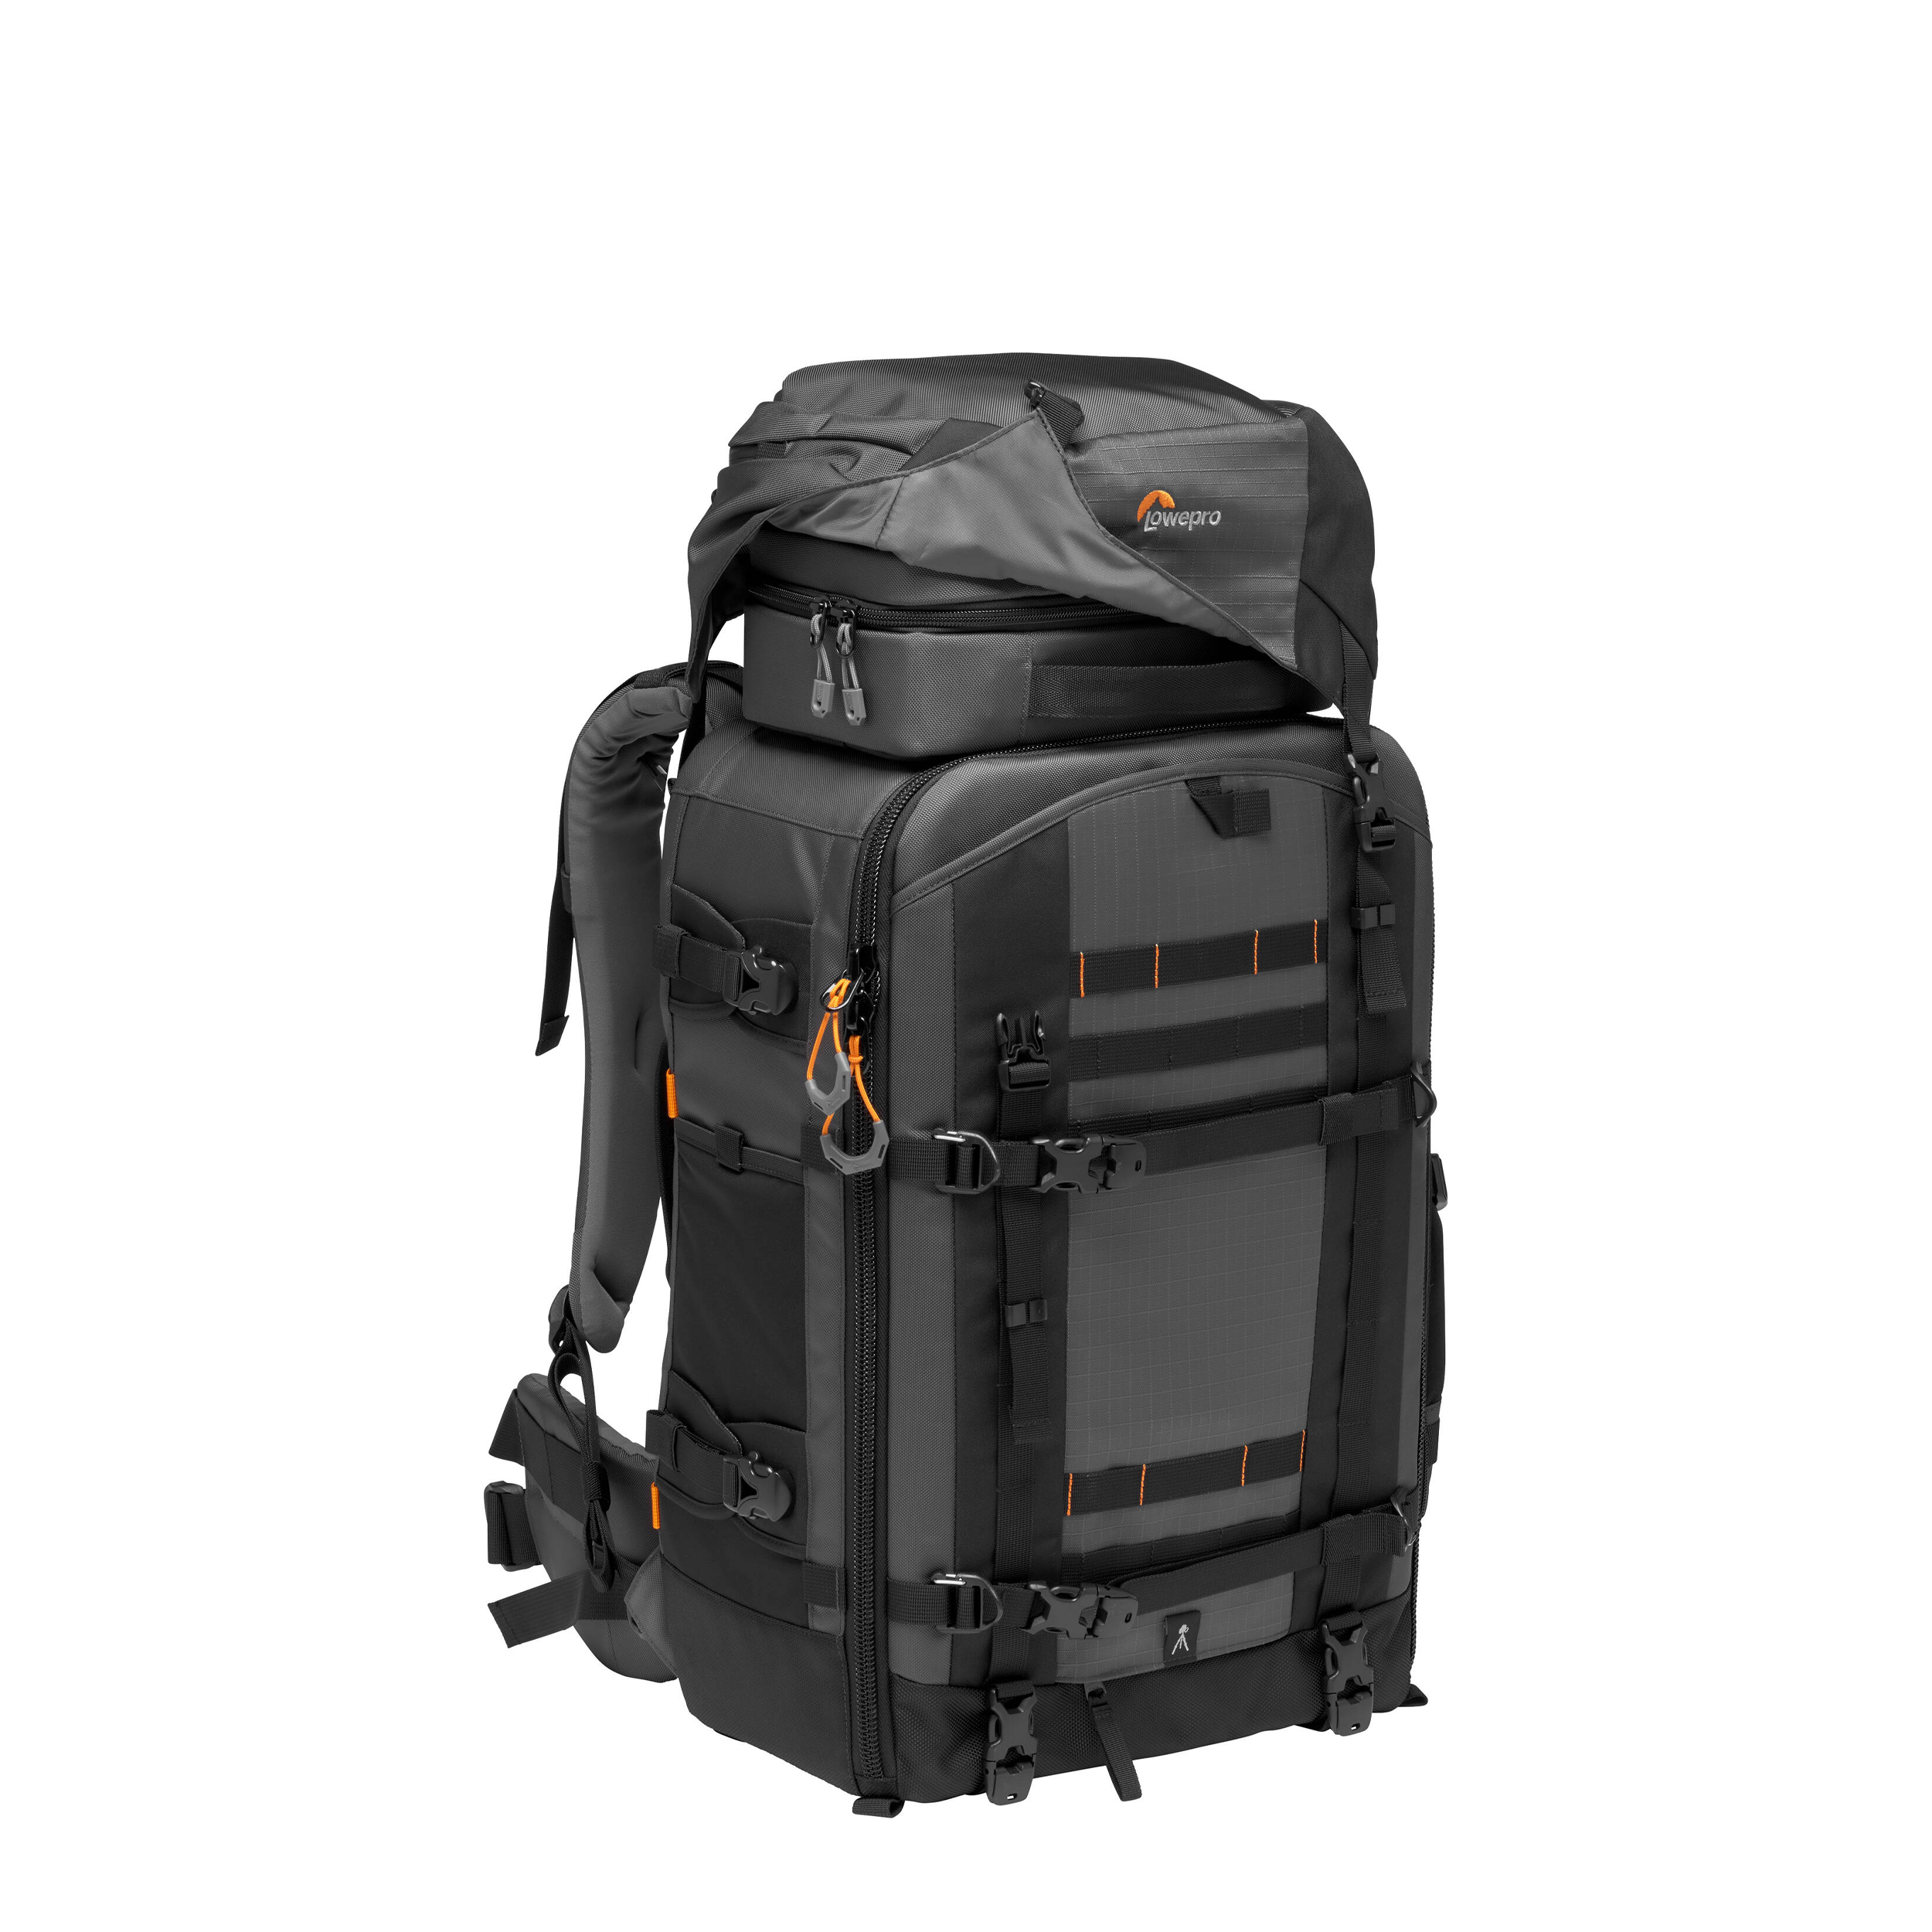 Lowepro Pro Trekker BP 550 AW II Backpack - Gray